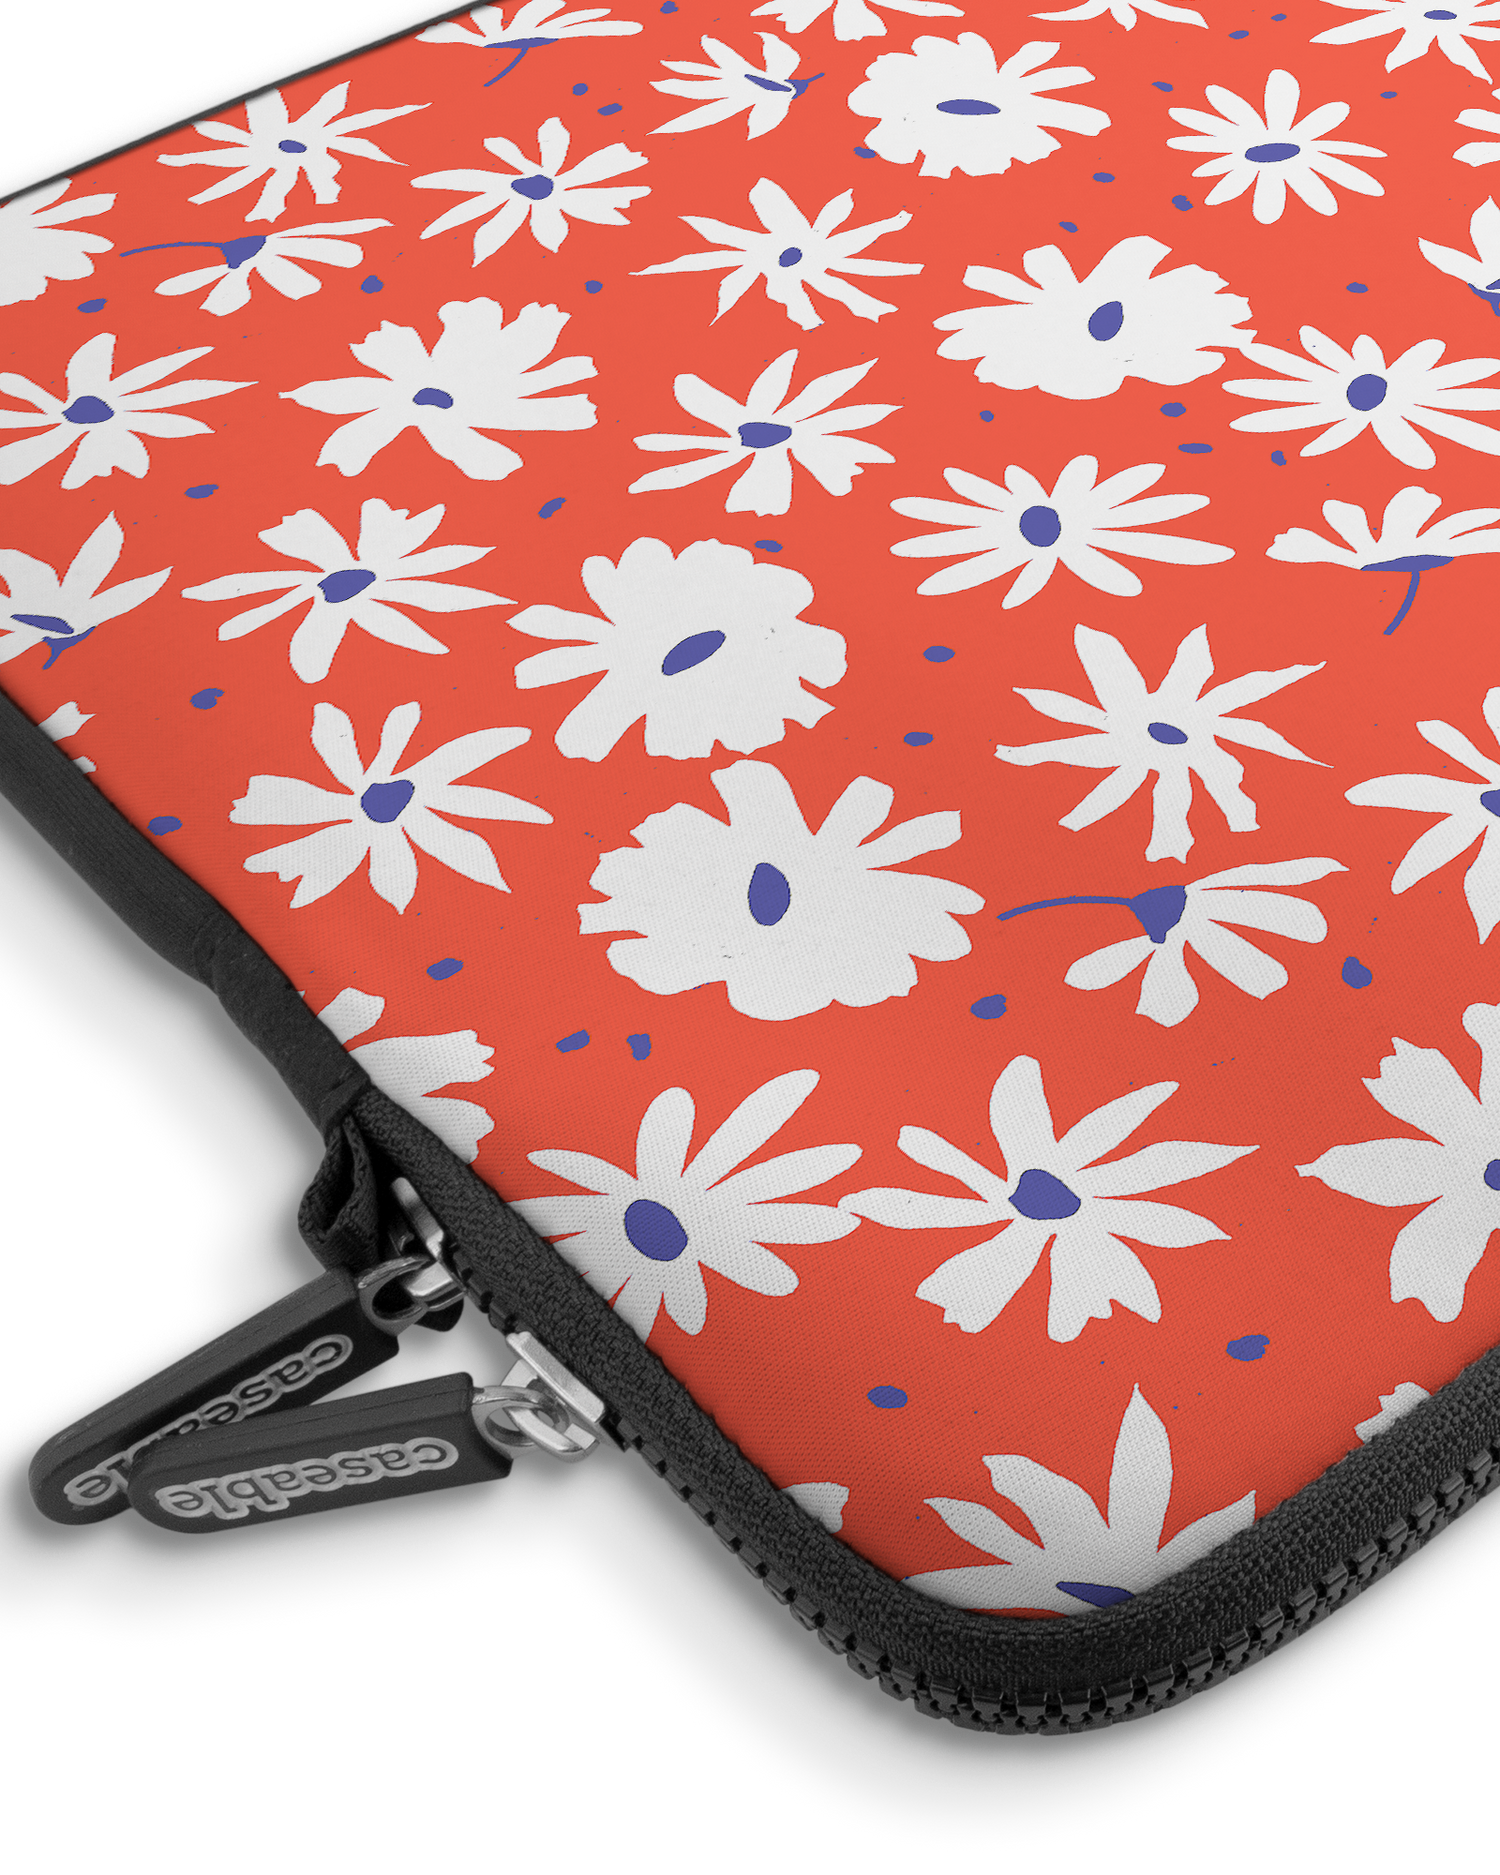 Retro Daisy Premium Laptoptasche 15 Zoll mit Gerät im Inneren